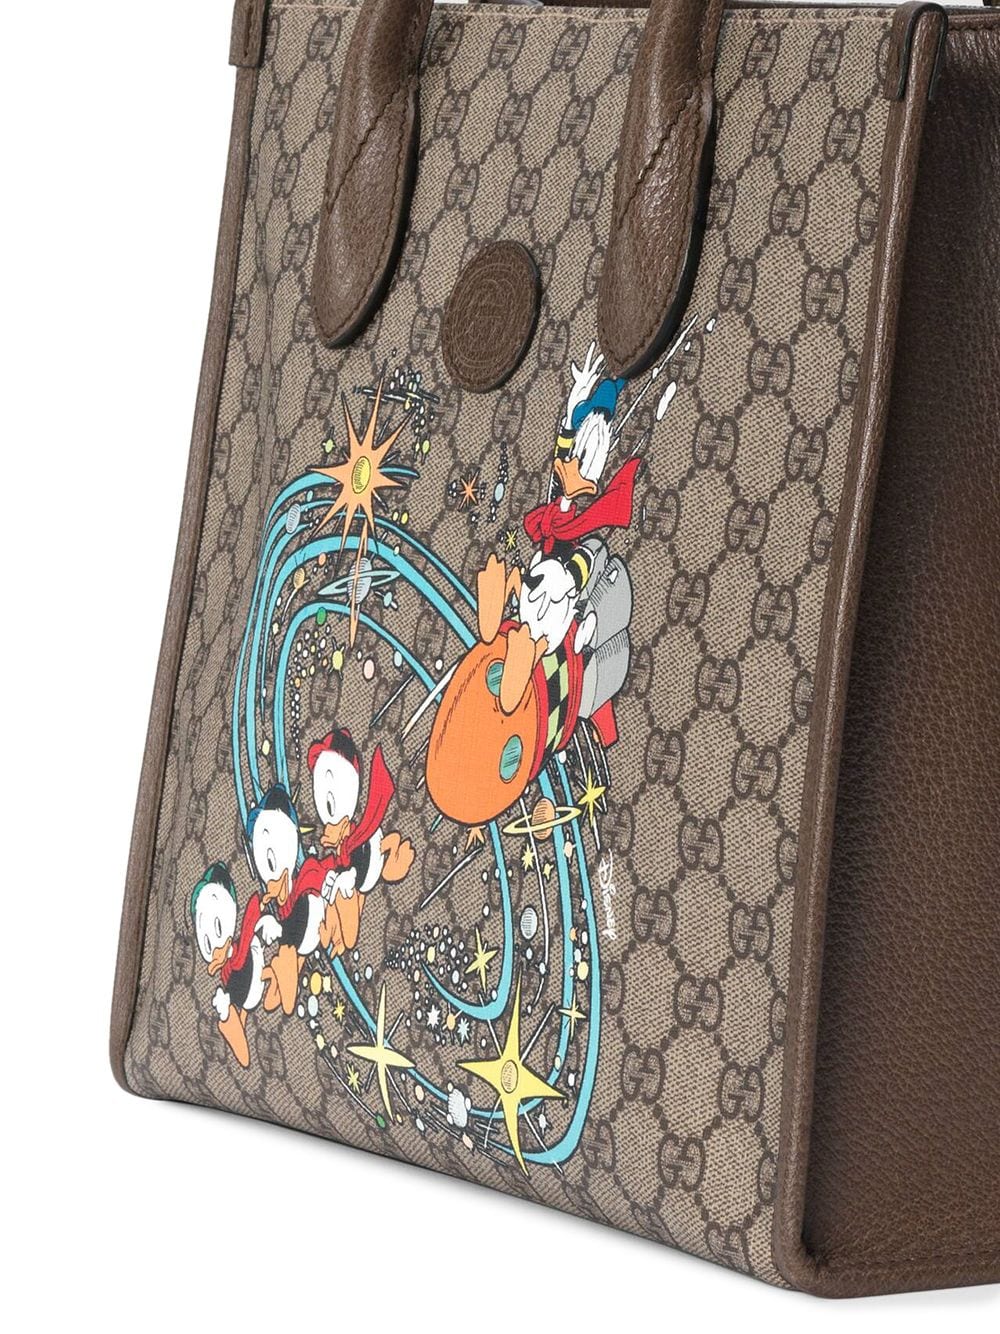 Gucci x Disney Donald Duck Tote Bag - Farfetch